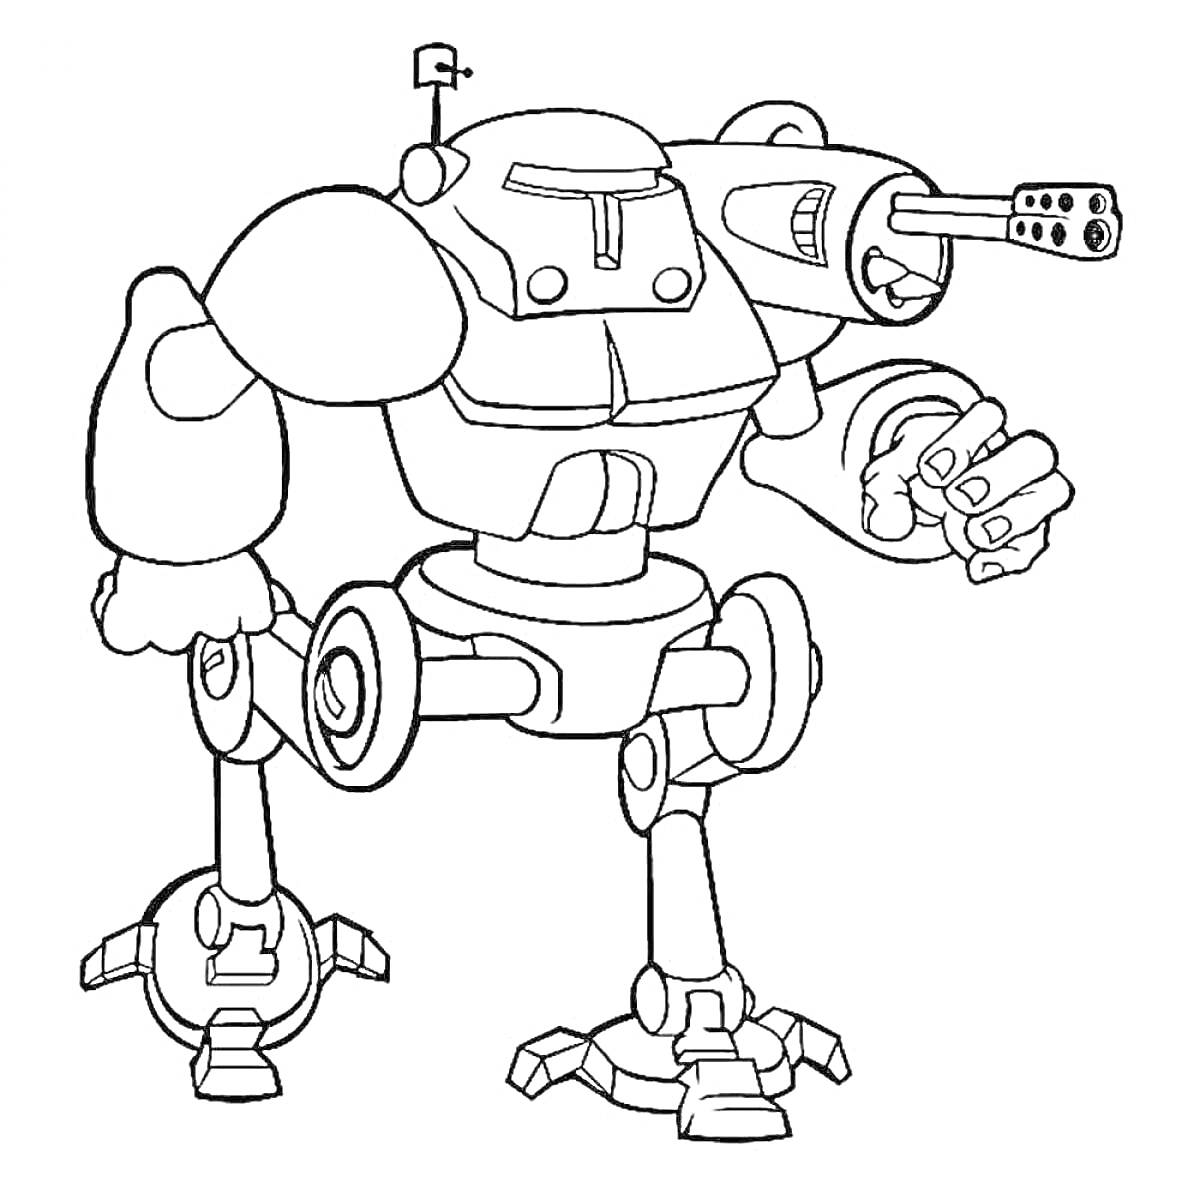 Боевой робот с пулеметом и антенной, с тремя ногами и массивными руками